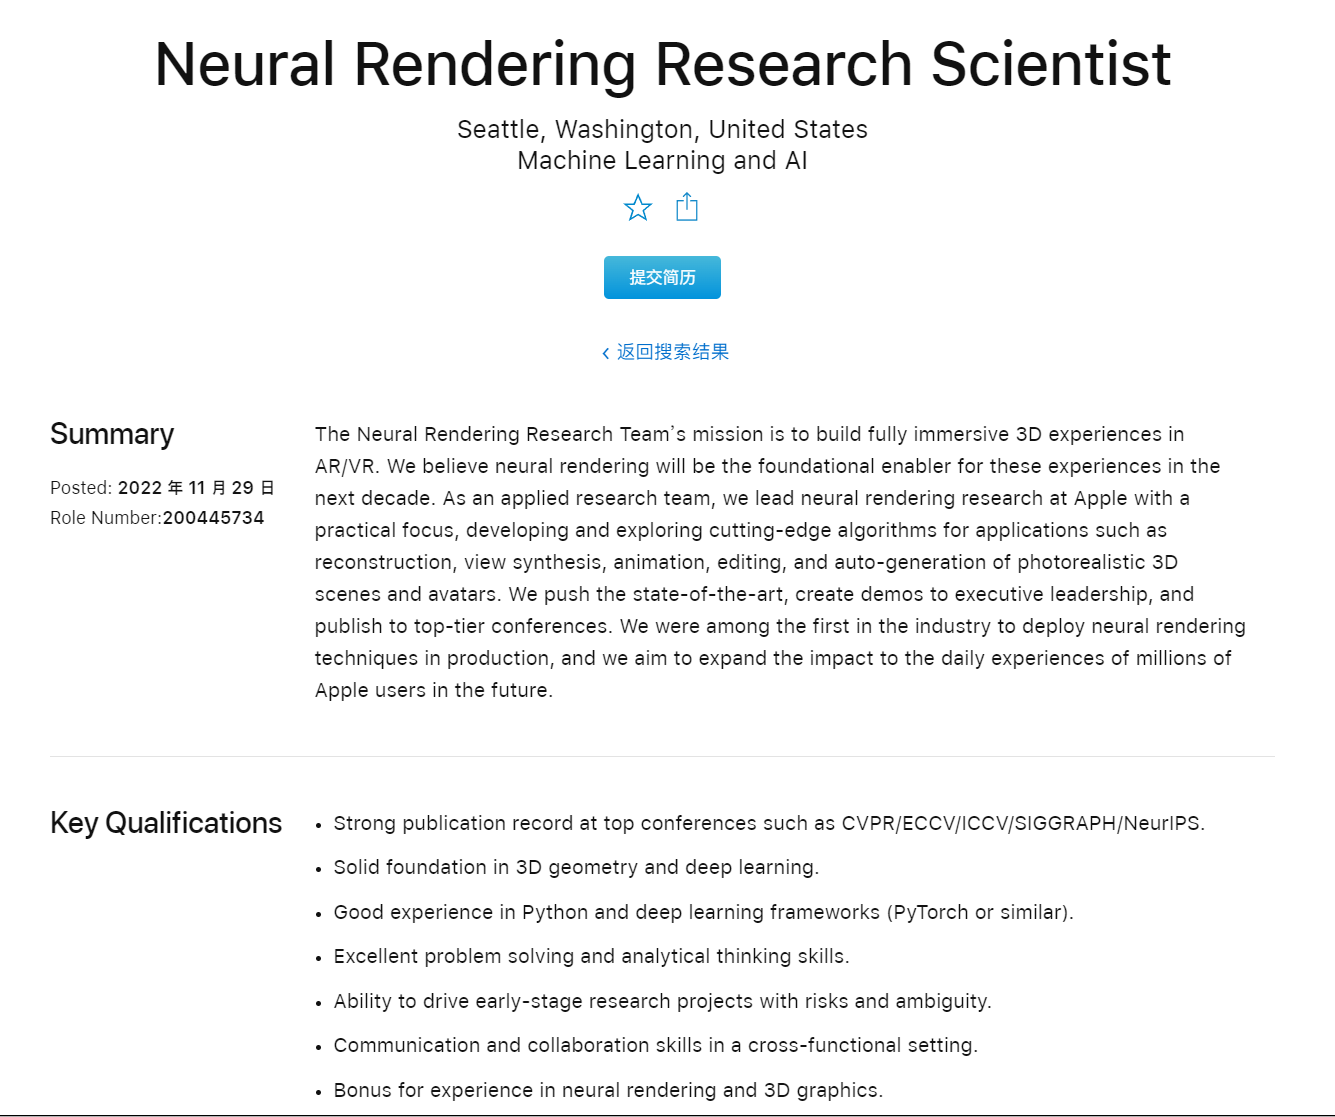 苹果正招募神经渲染研究科学家，旨在为 AR / VR 产品打造沉浸式体验